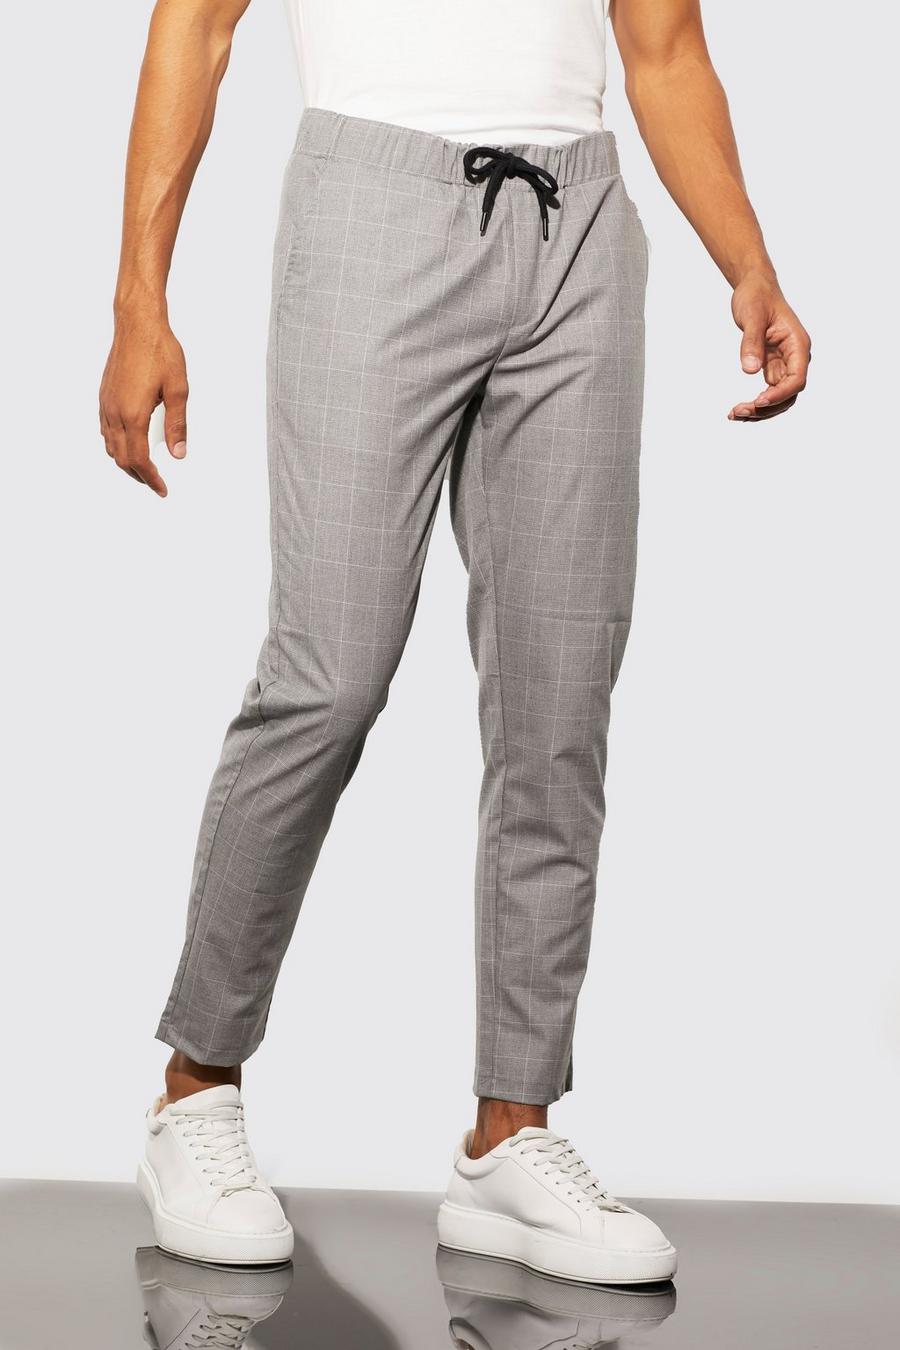 אפור gris מכנסיים משובצים בגזרת סקיני עם רצועת מותניים אלסטית